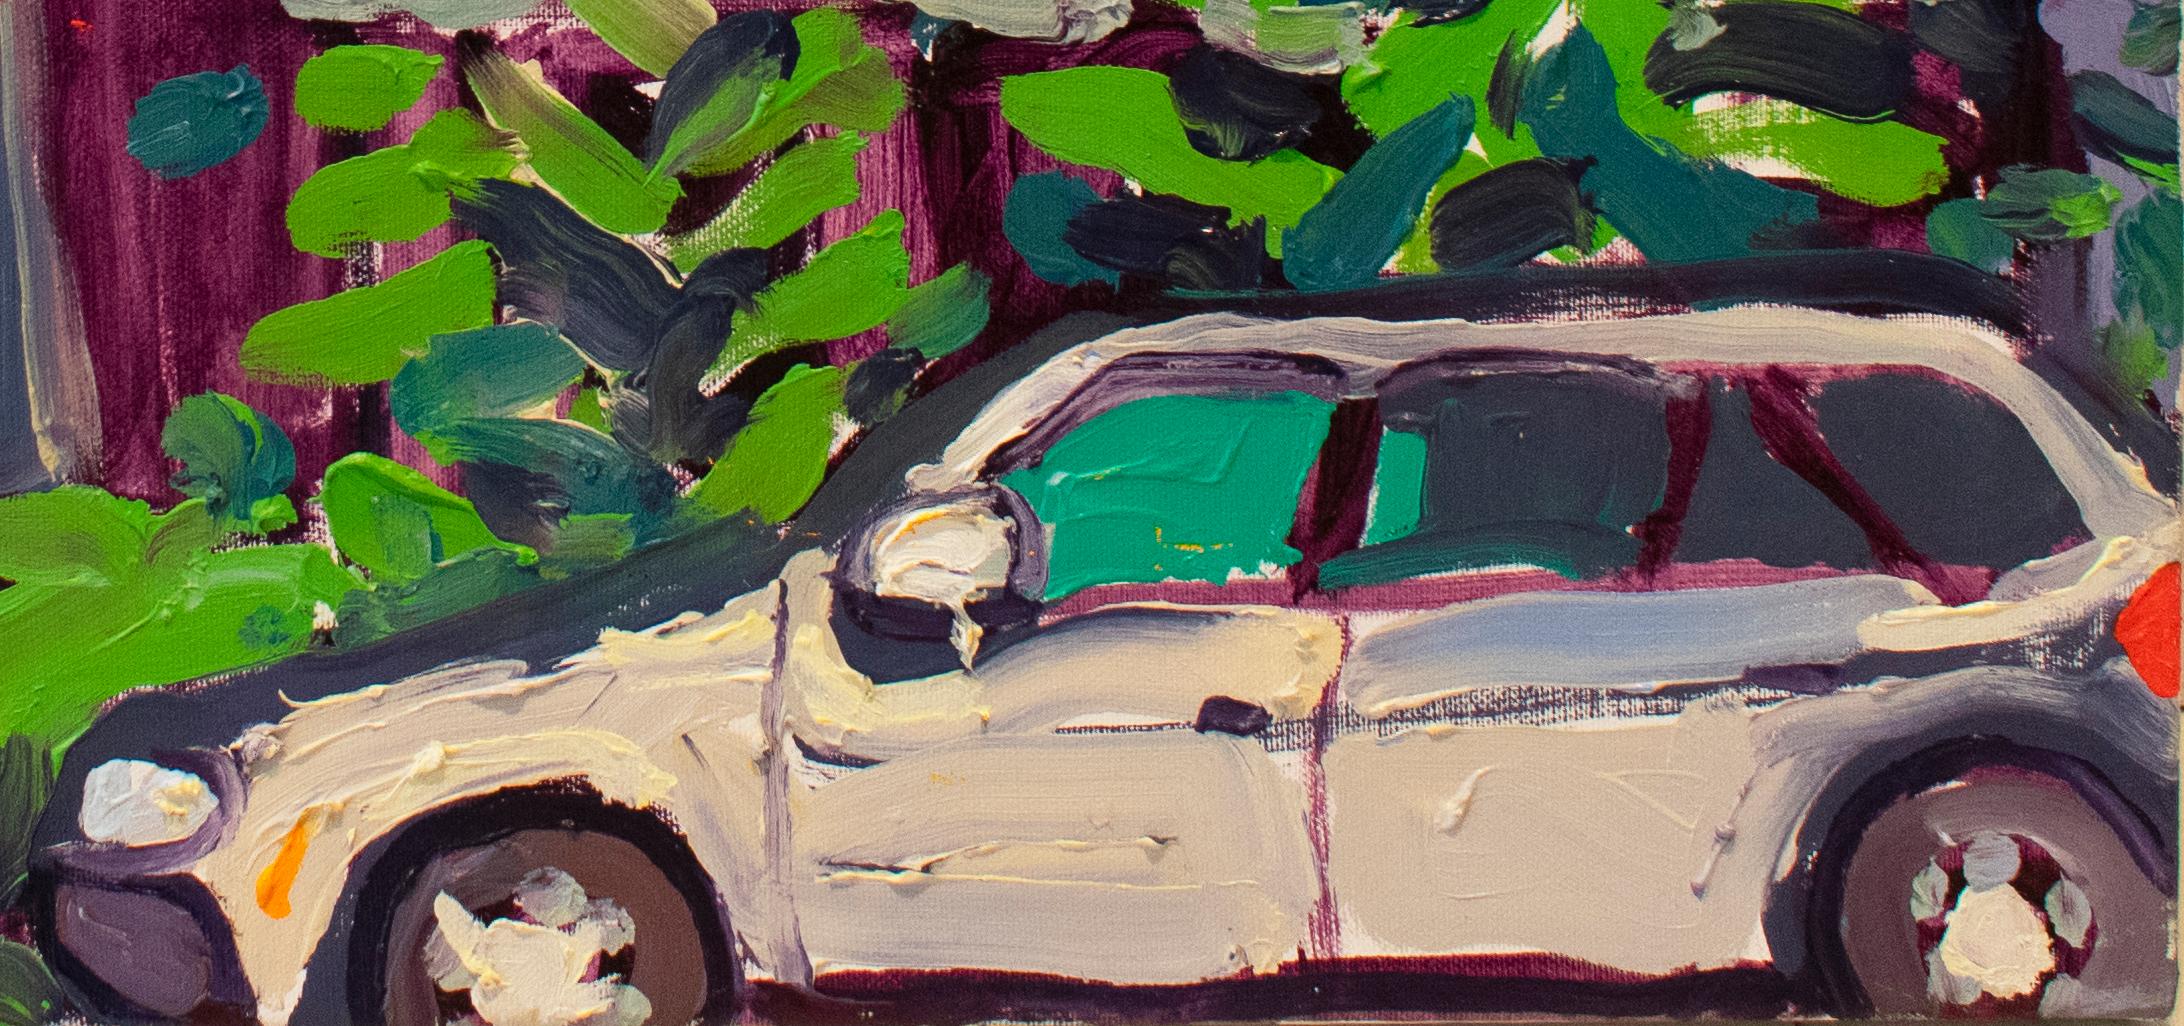 Peinture à l'huile de paysage suburban de style fauviste 214, 216 State St. - Contemporain Painting par Dan Rupe